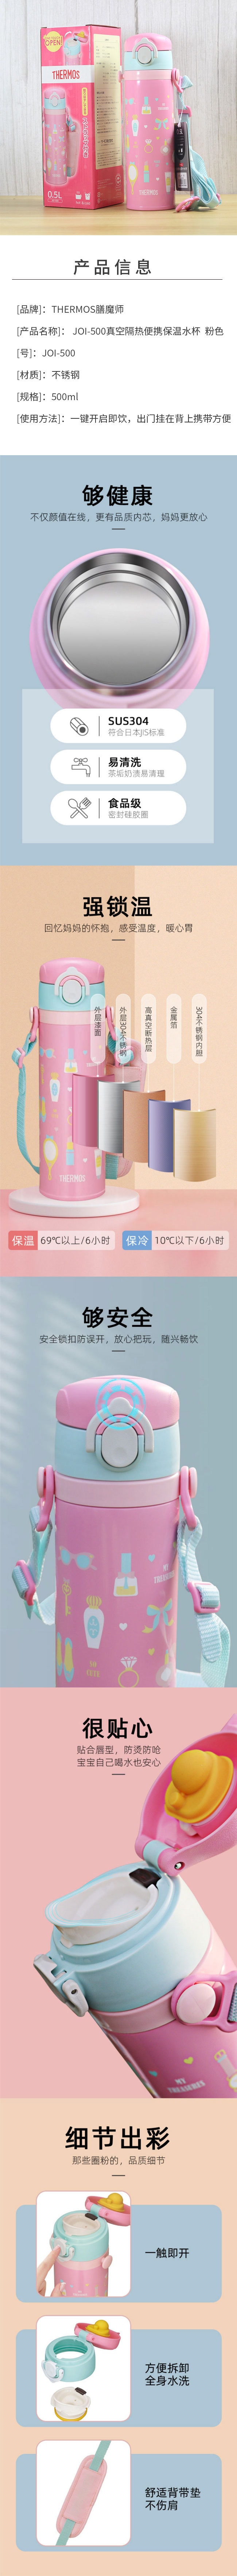 【日本直邮】THERMOS膳魔师 JOI-500真空隔热便携保温水杯500ml 粉色